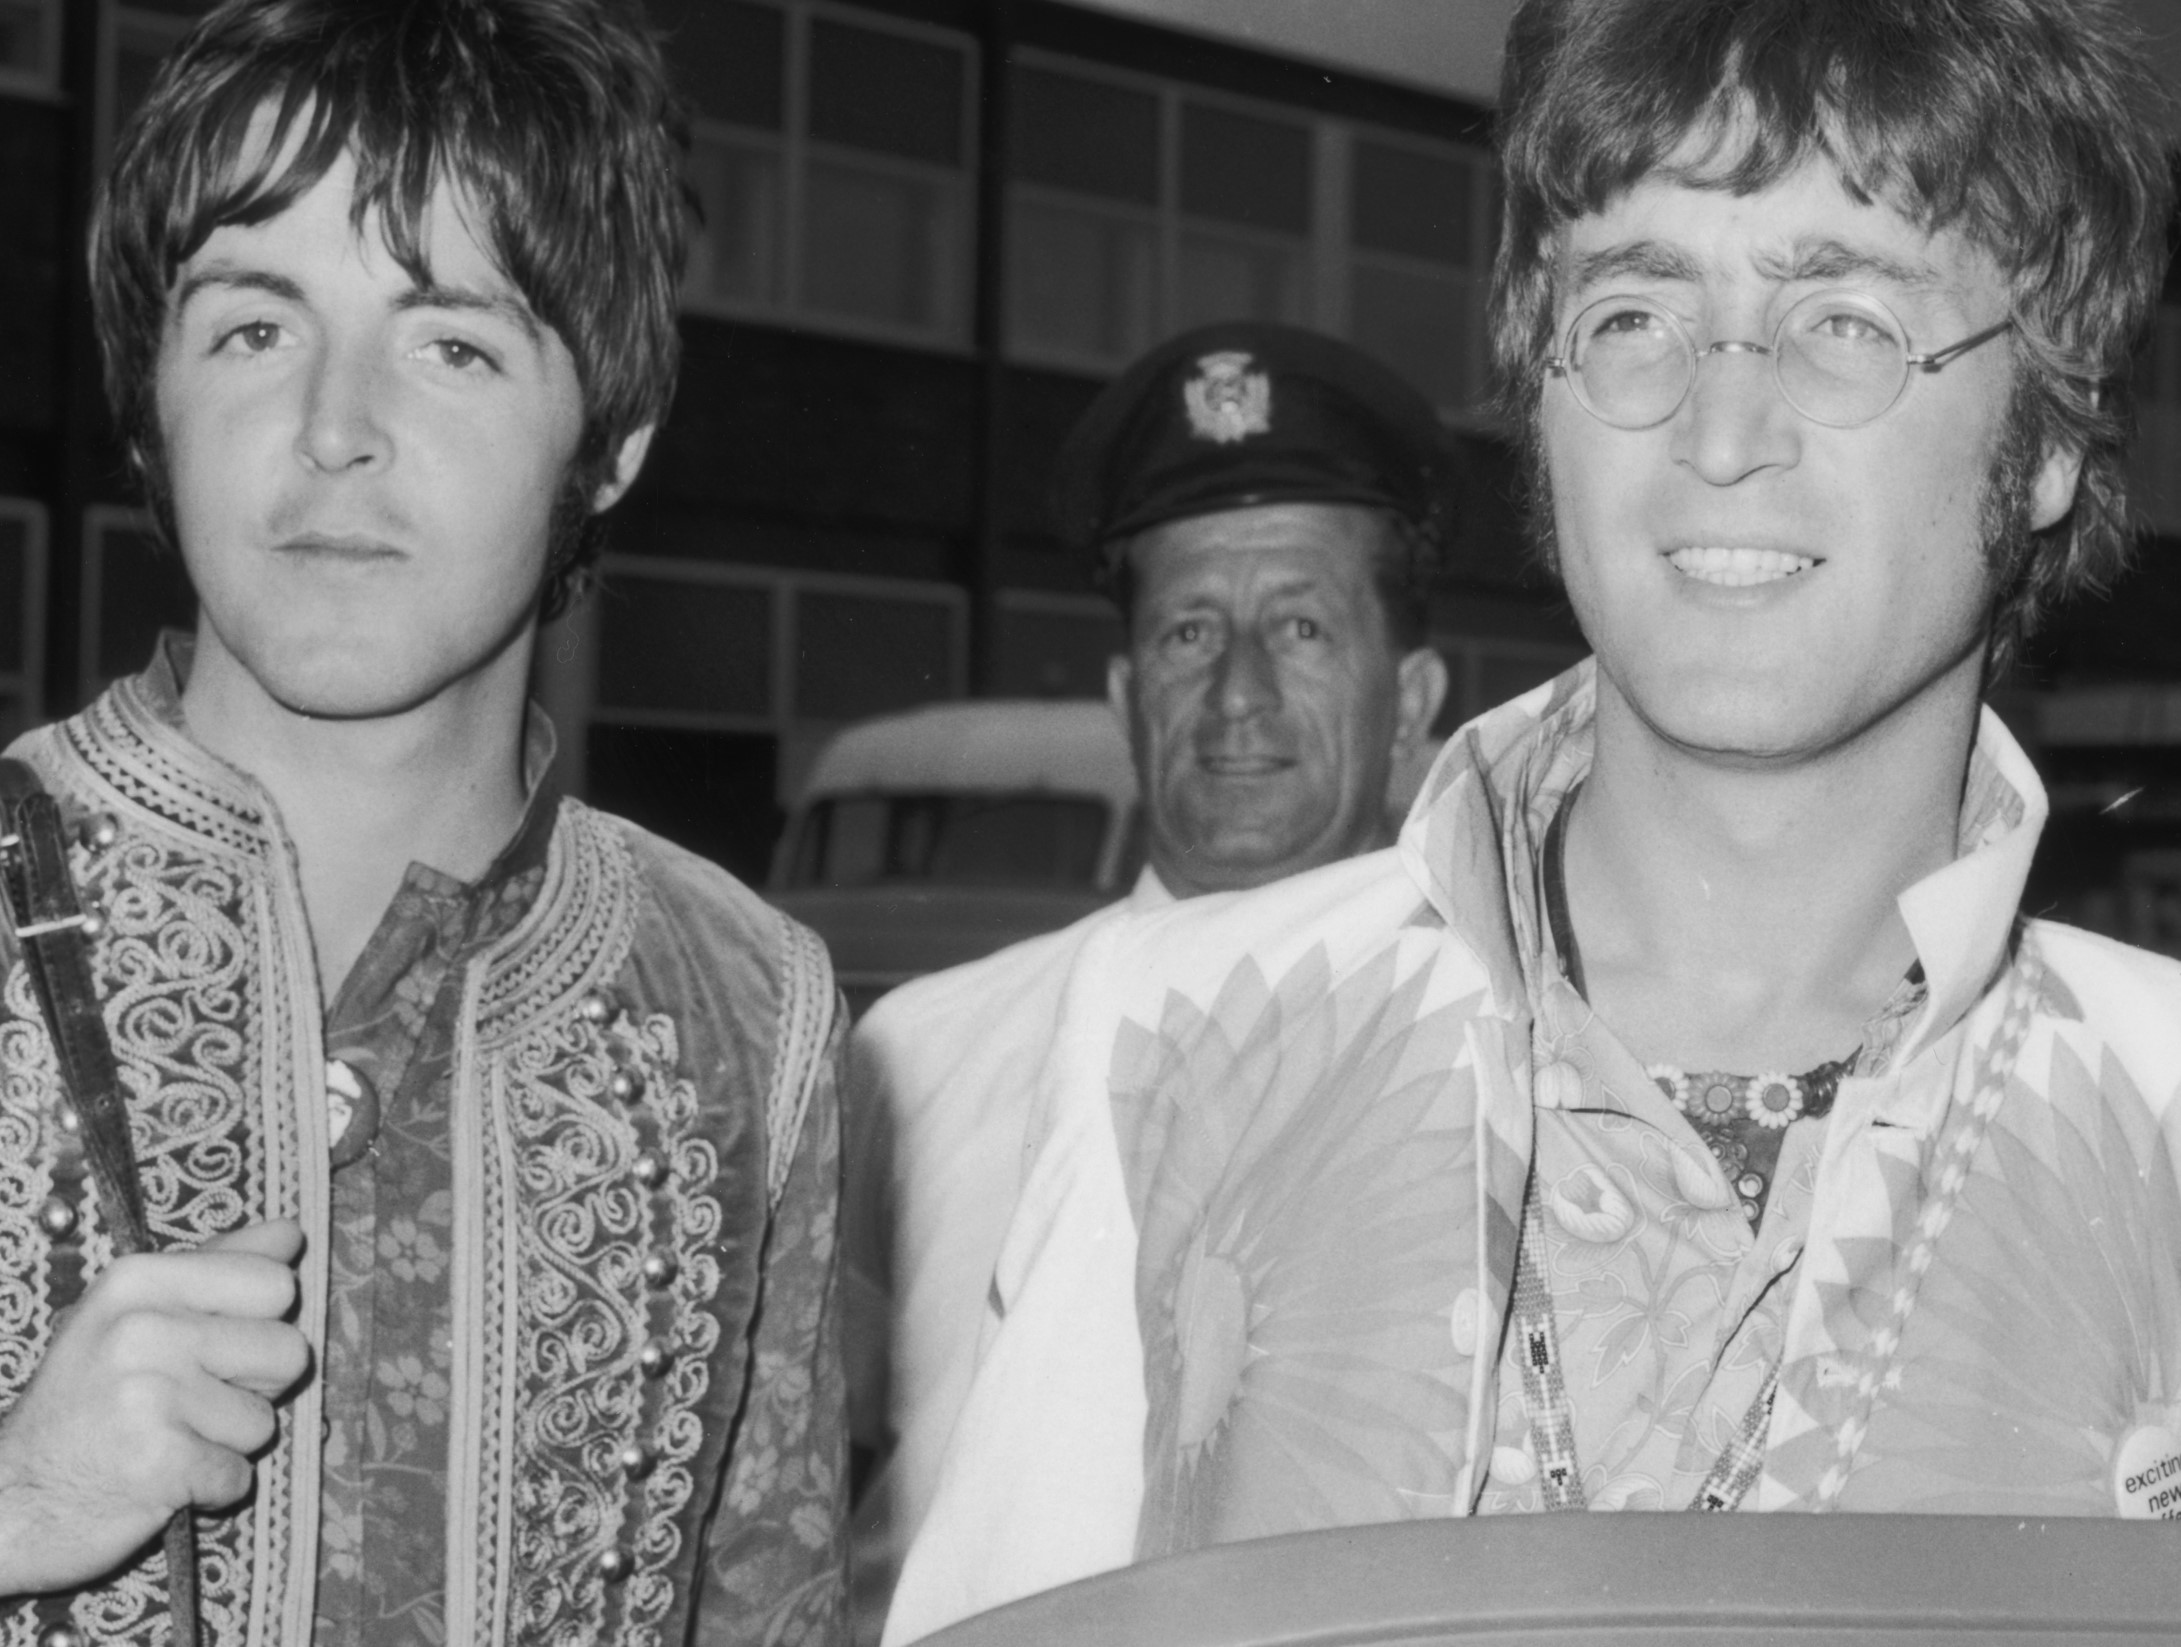 Paul McCartney and John Lennon in black-and-white